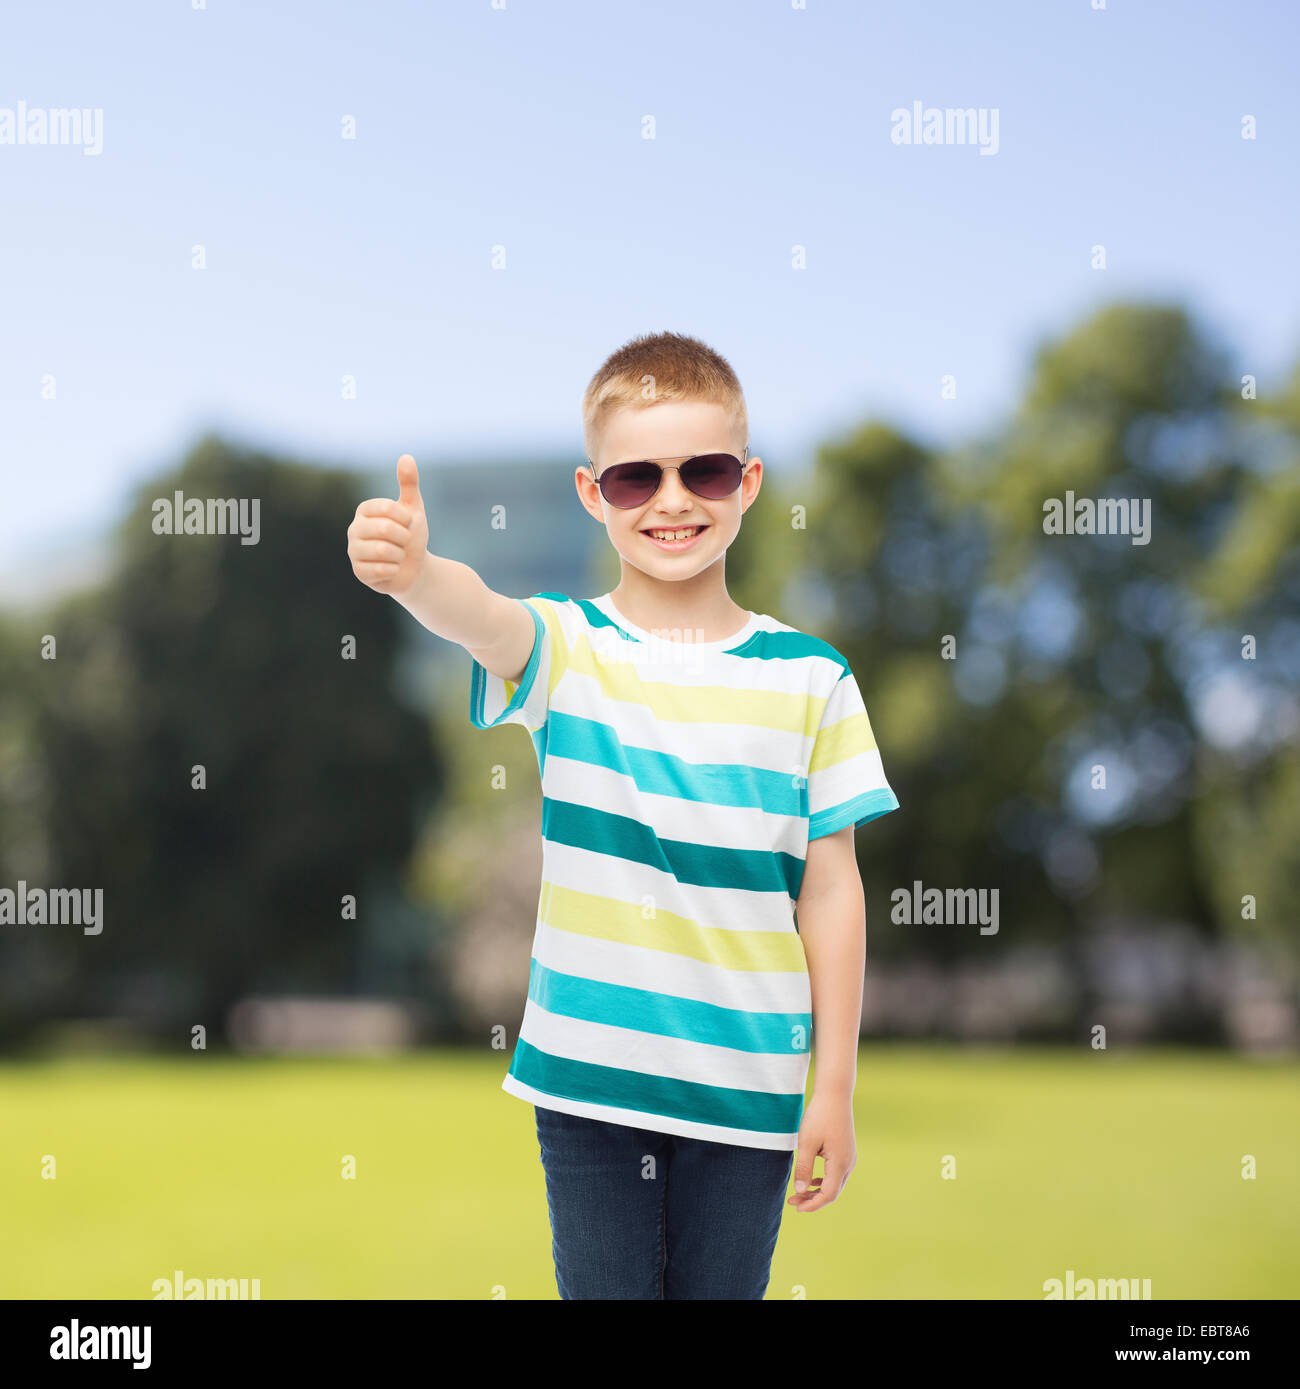 https://c8.alamy.com/comp/EBT8A6/smiling-cute-little-boy-in-sunglasses-EBT8A6.jpg